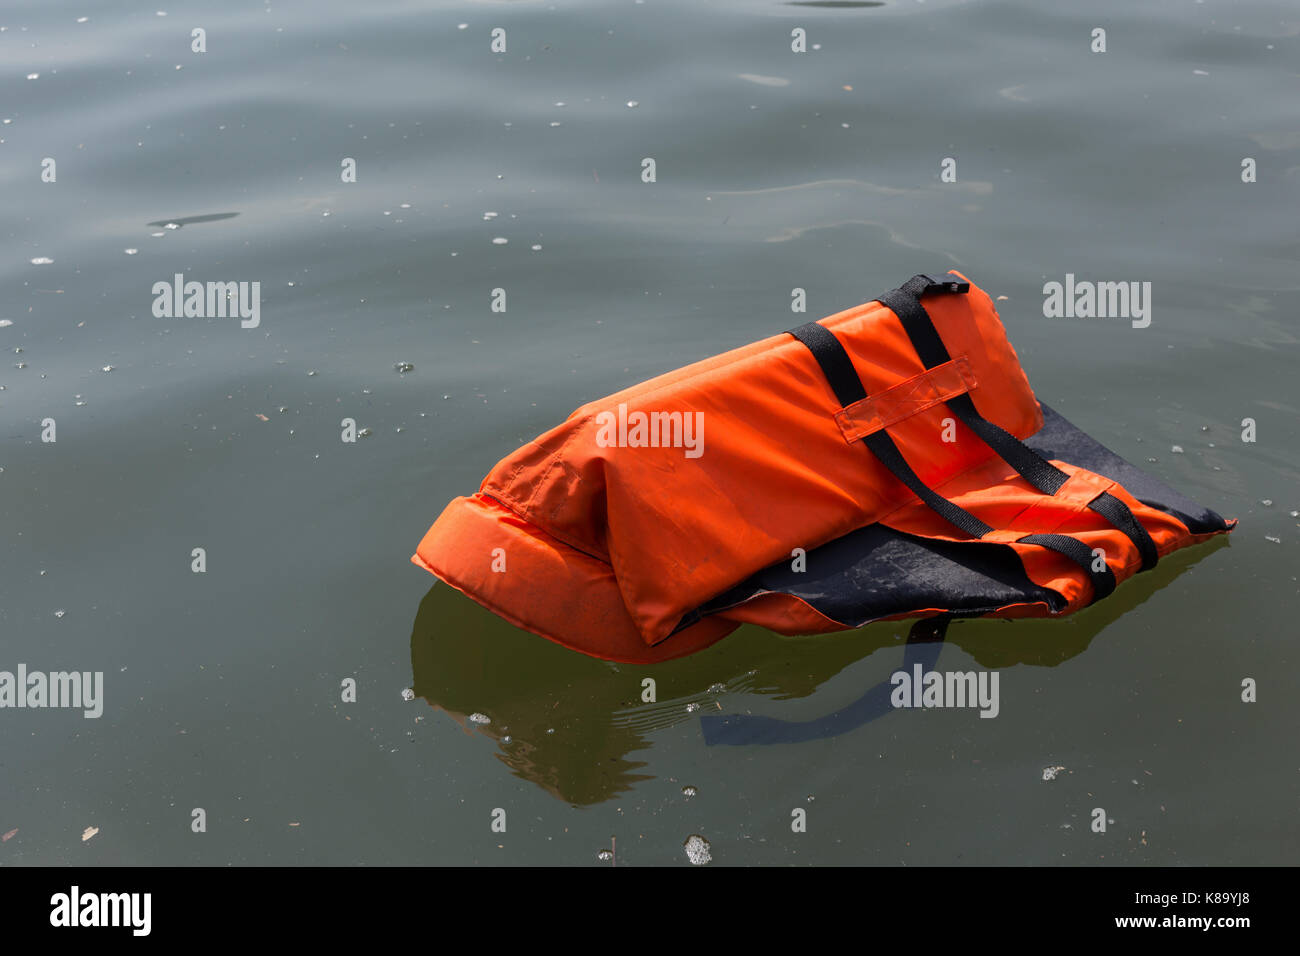 Giubbotti di salvataggio sono state oggetto di pratiche di dumping nel mare. Foto Stock